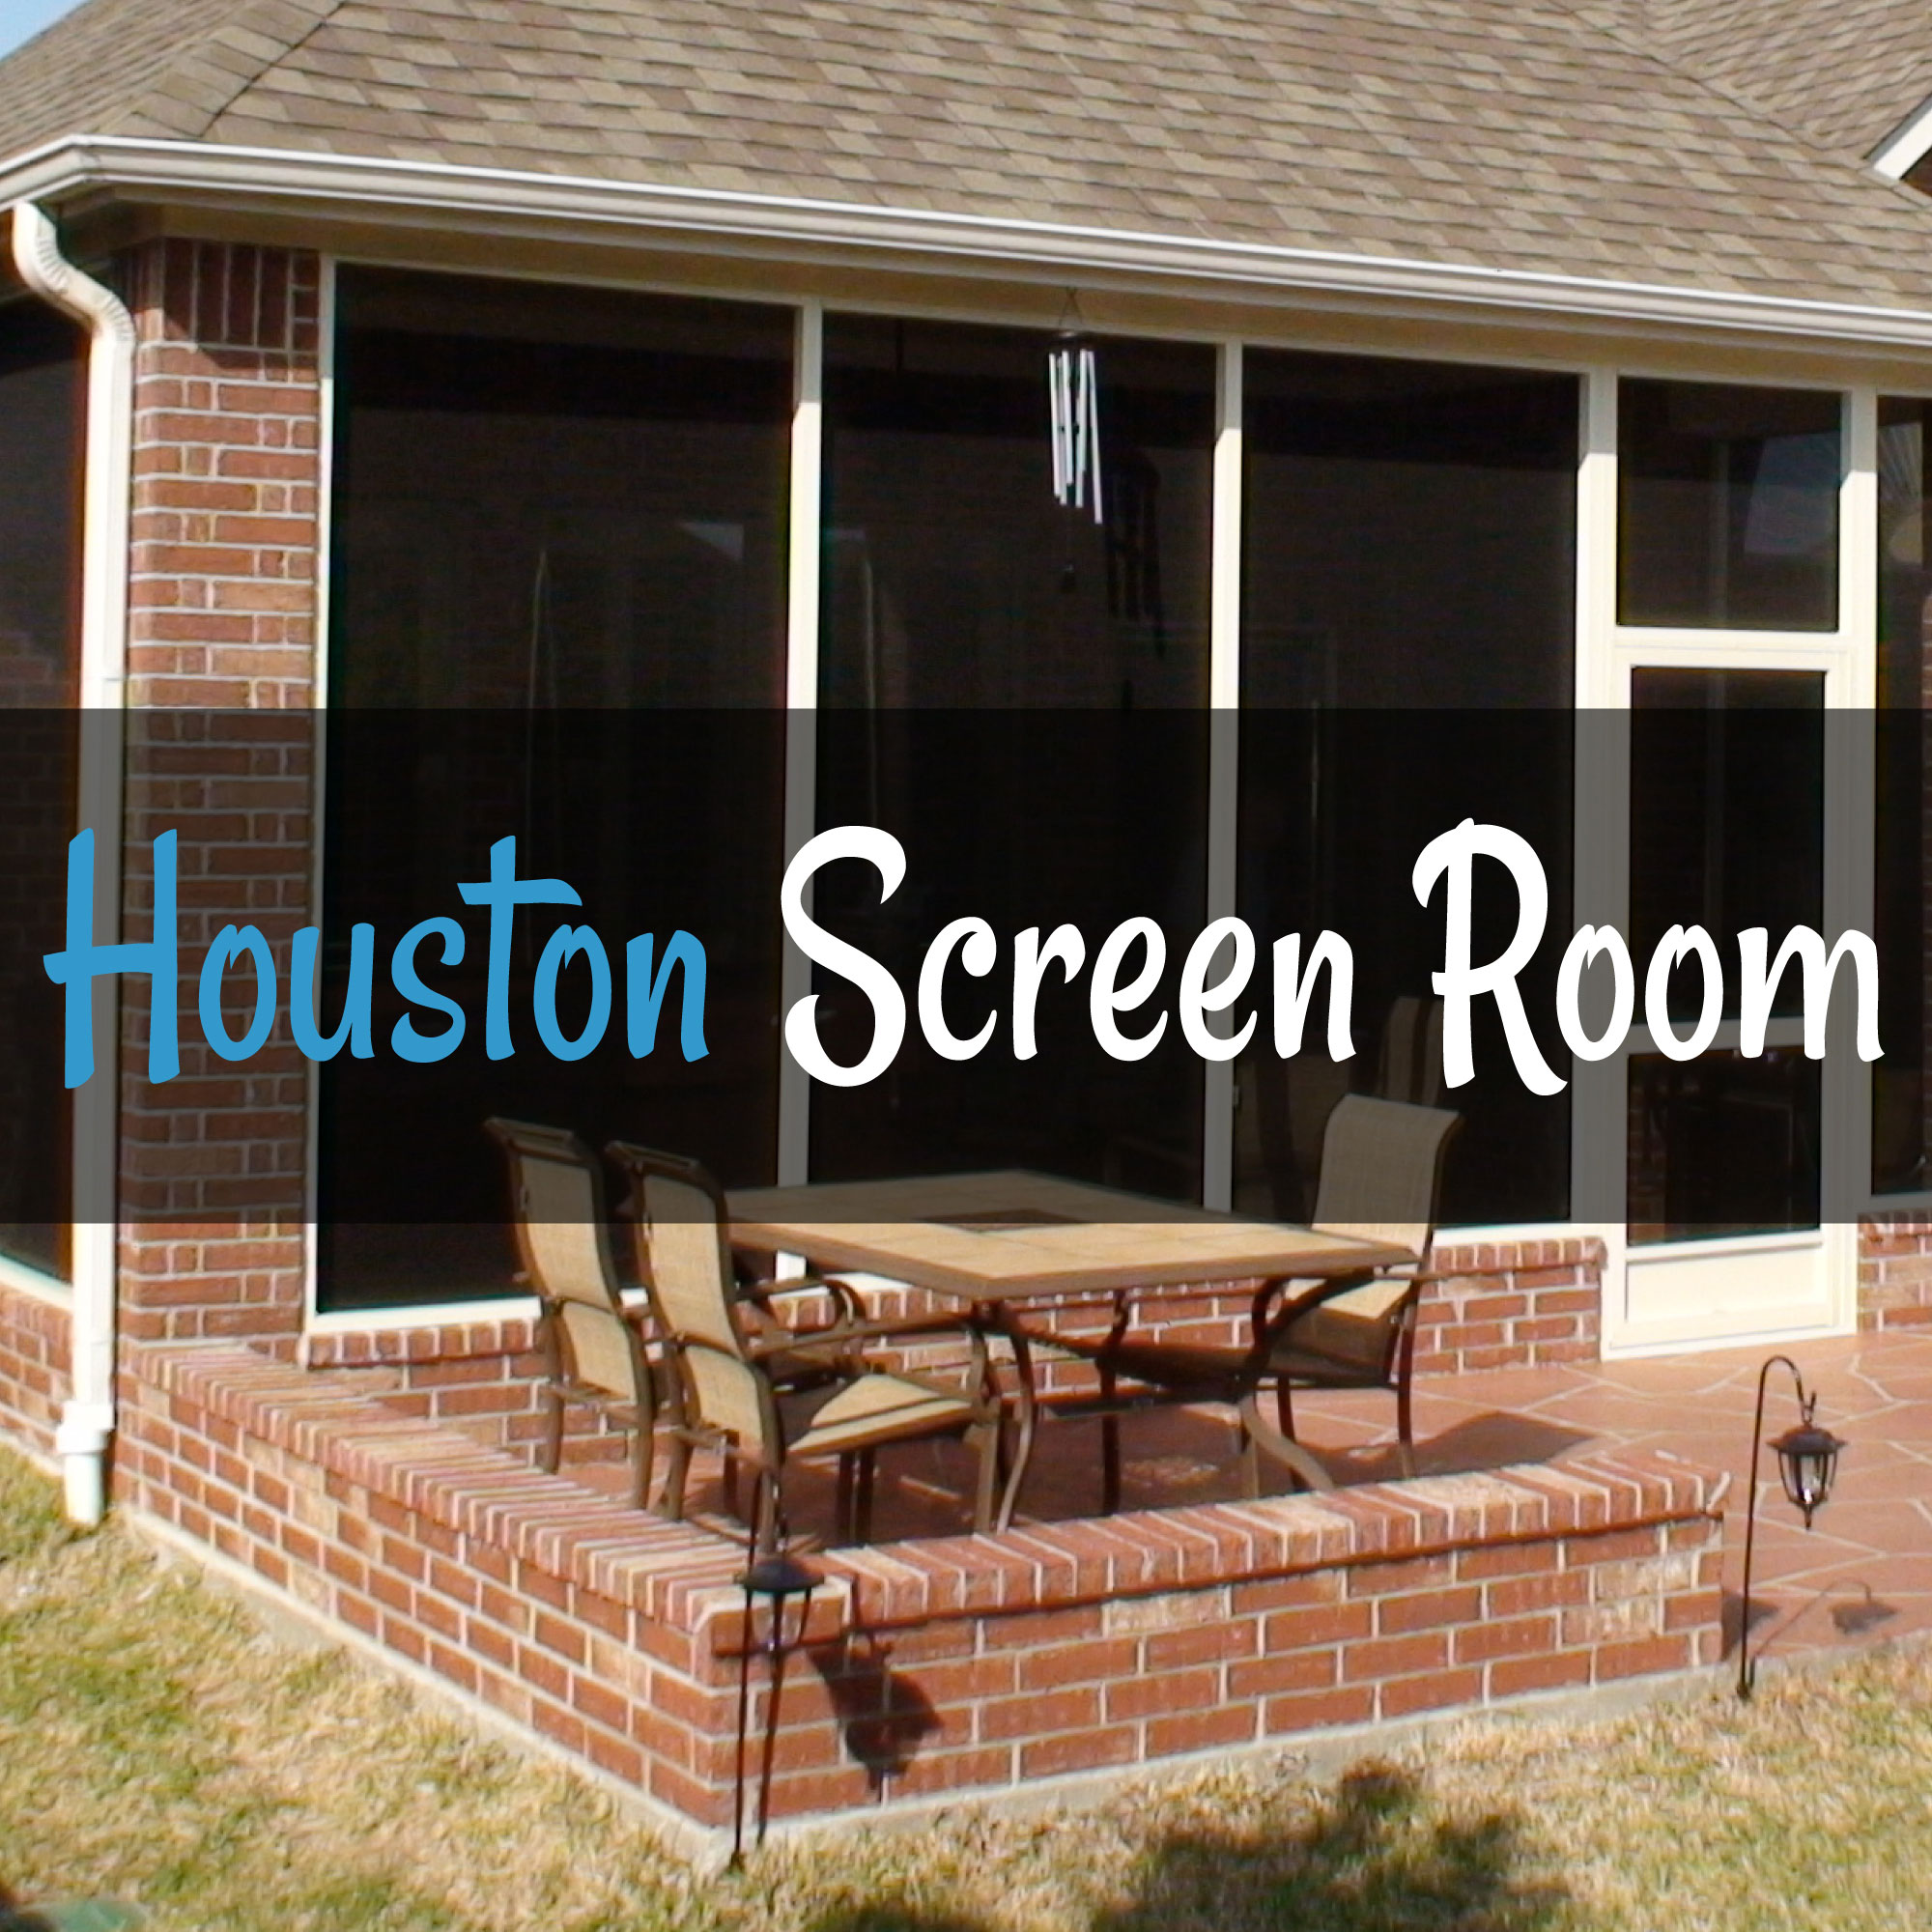 Houston Screen Room